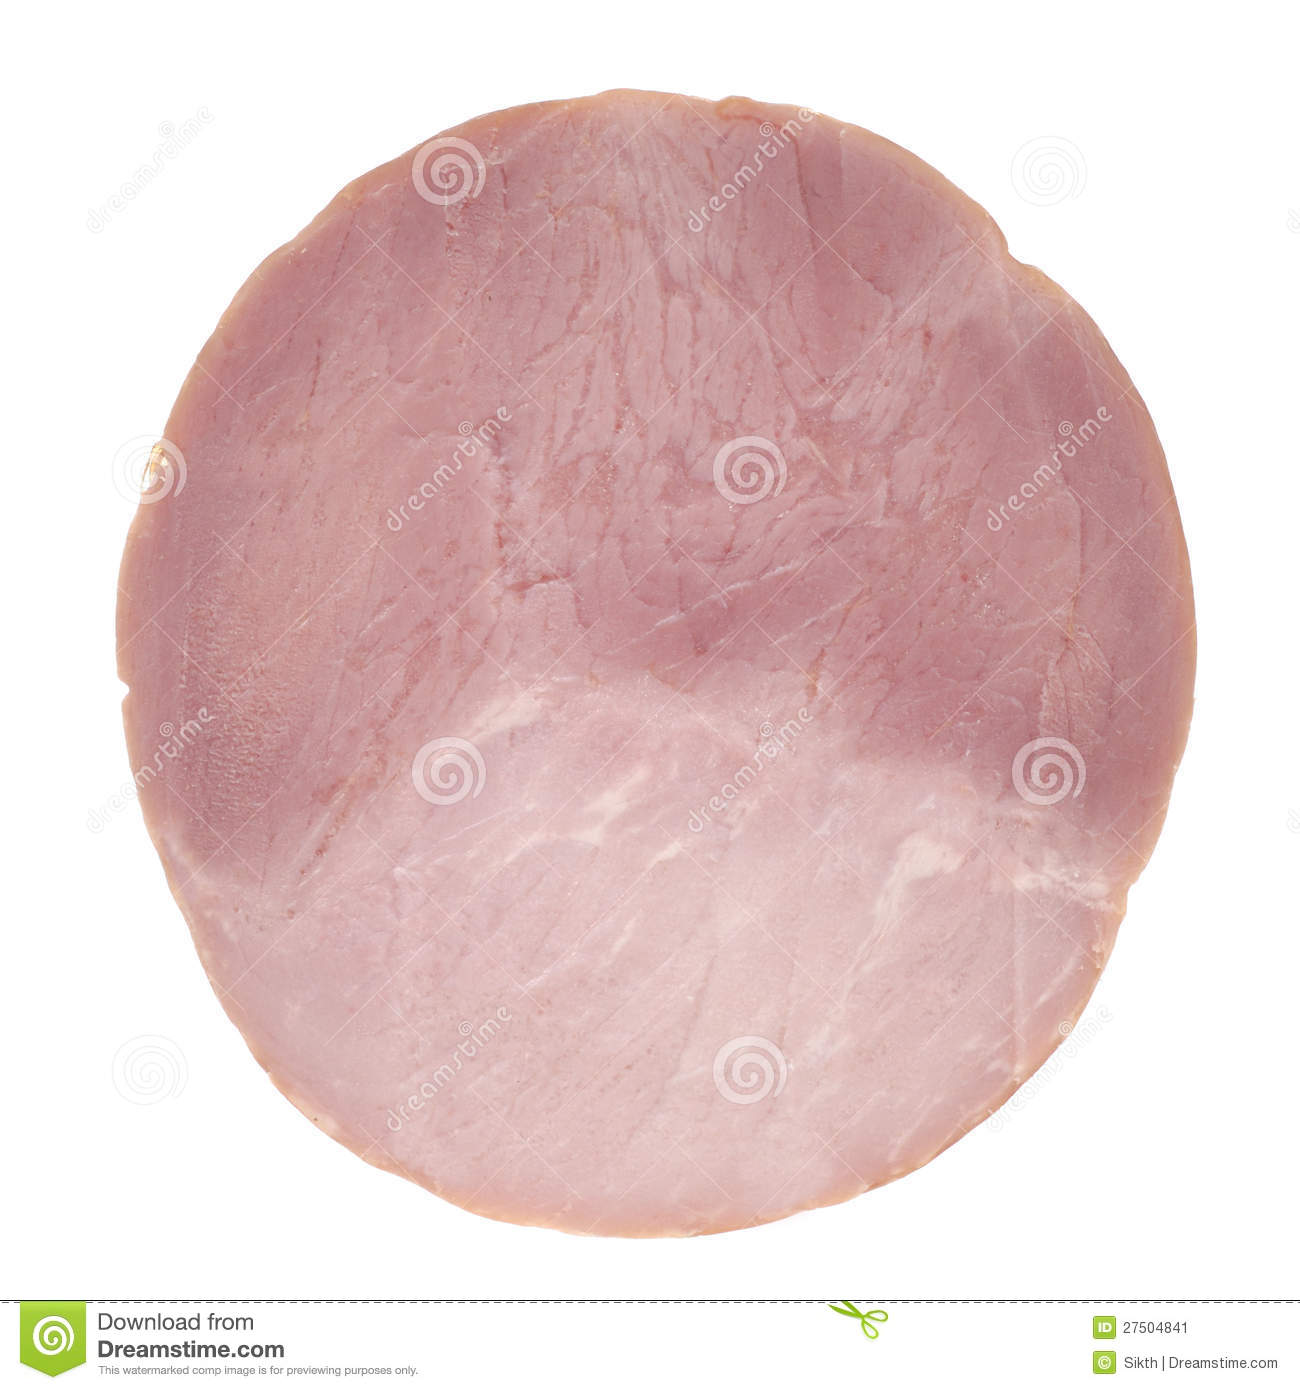 Slice Of Ham Isolated On White Background Stock Image   Image    